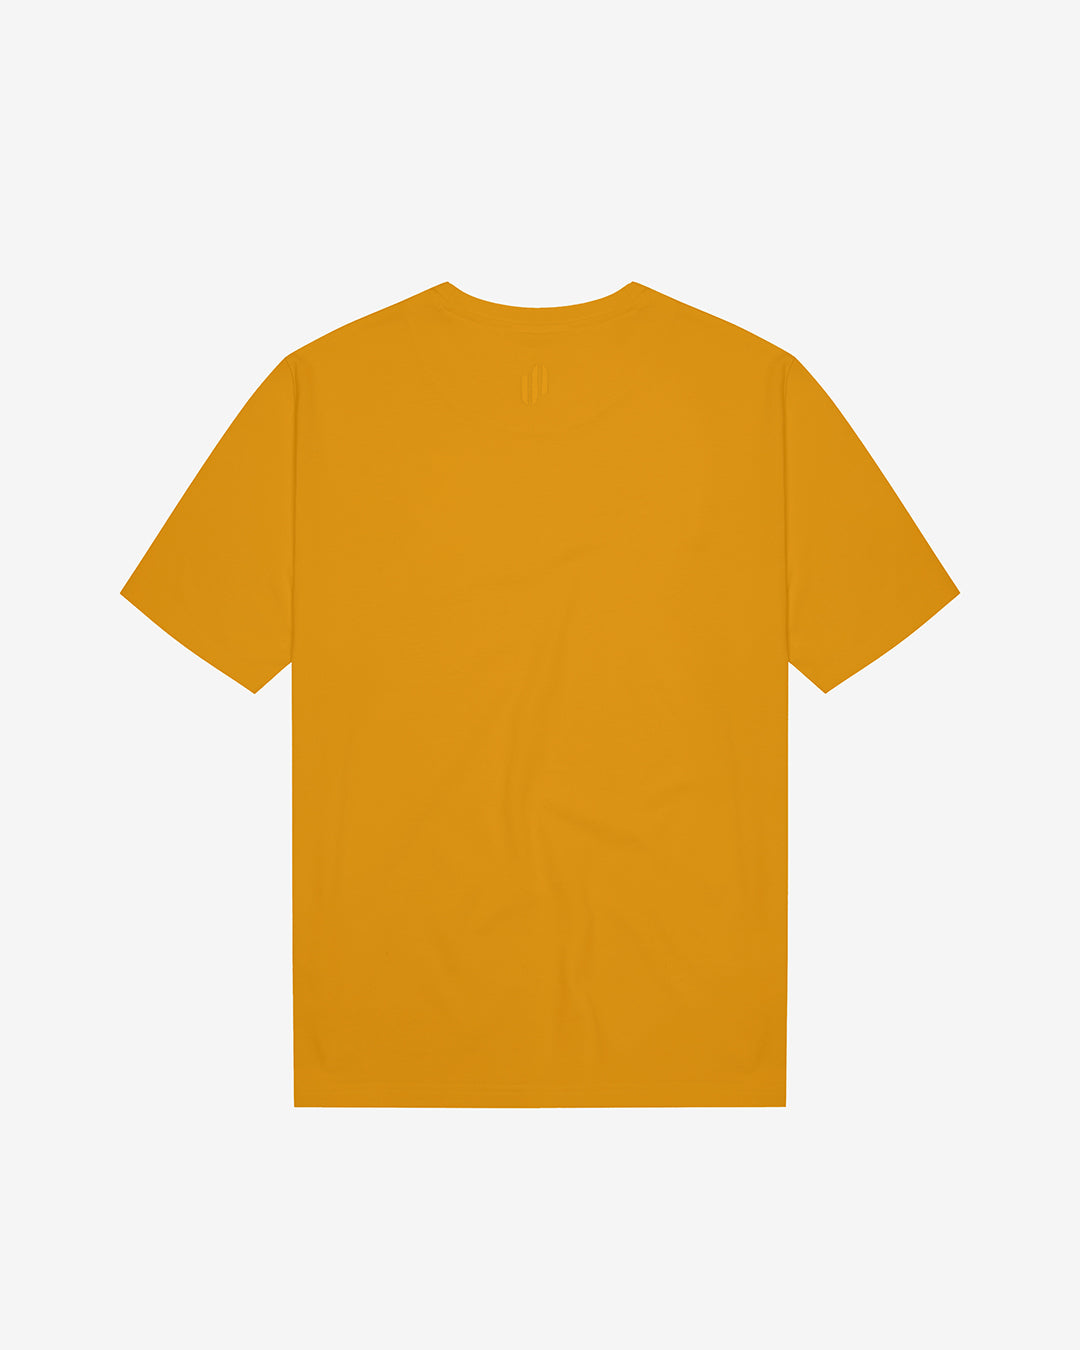 VC: AUS - Vintage T-Shirt - Australia